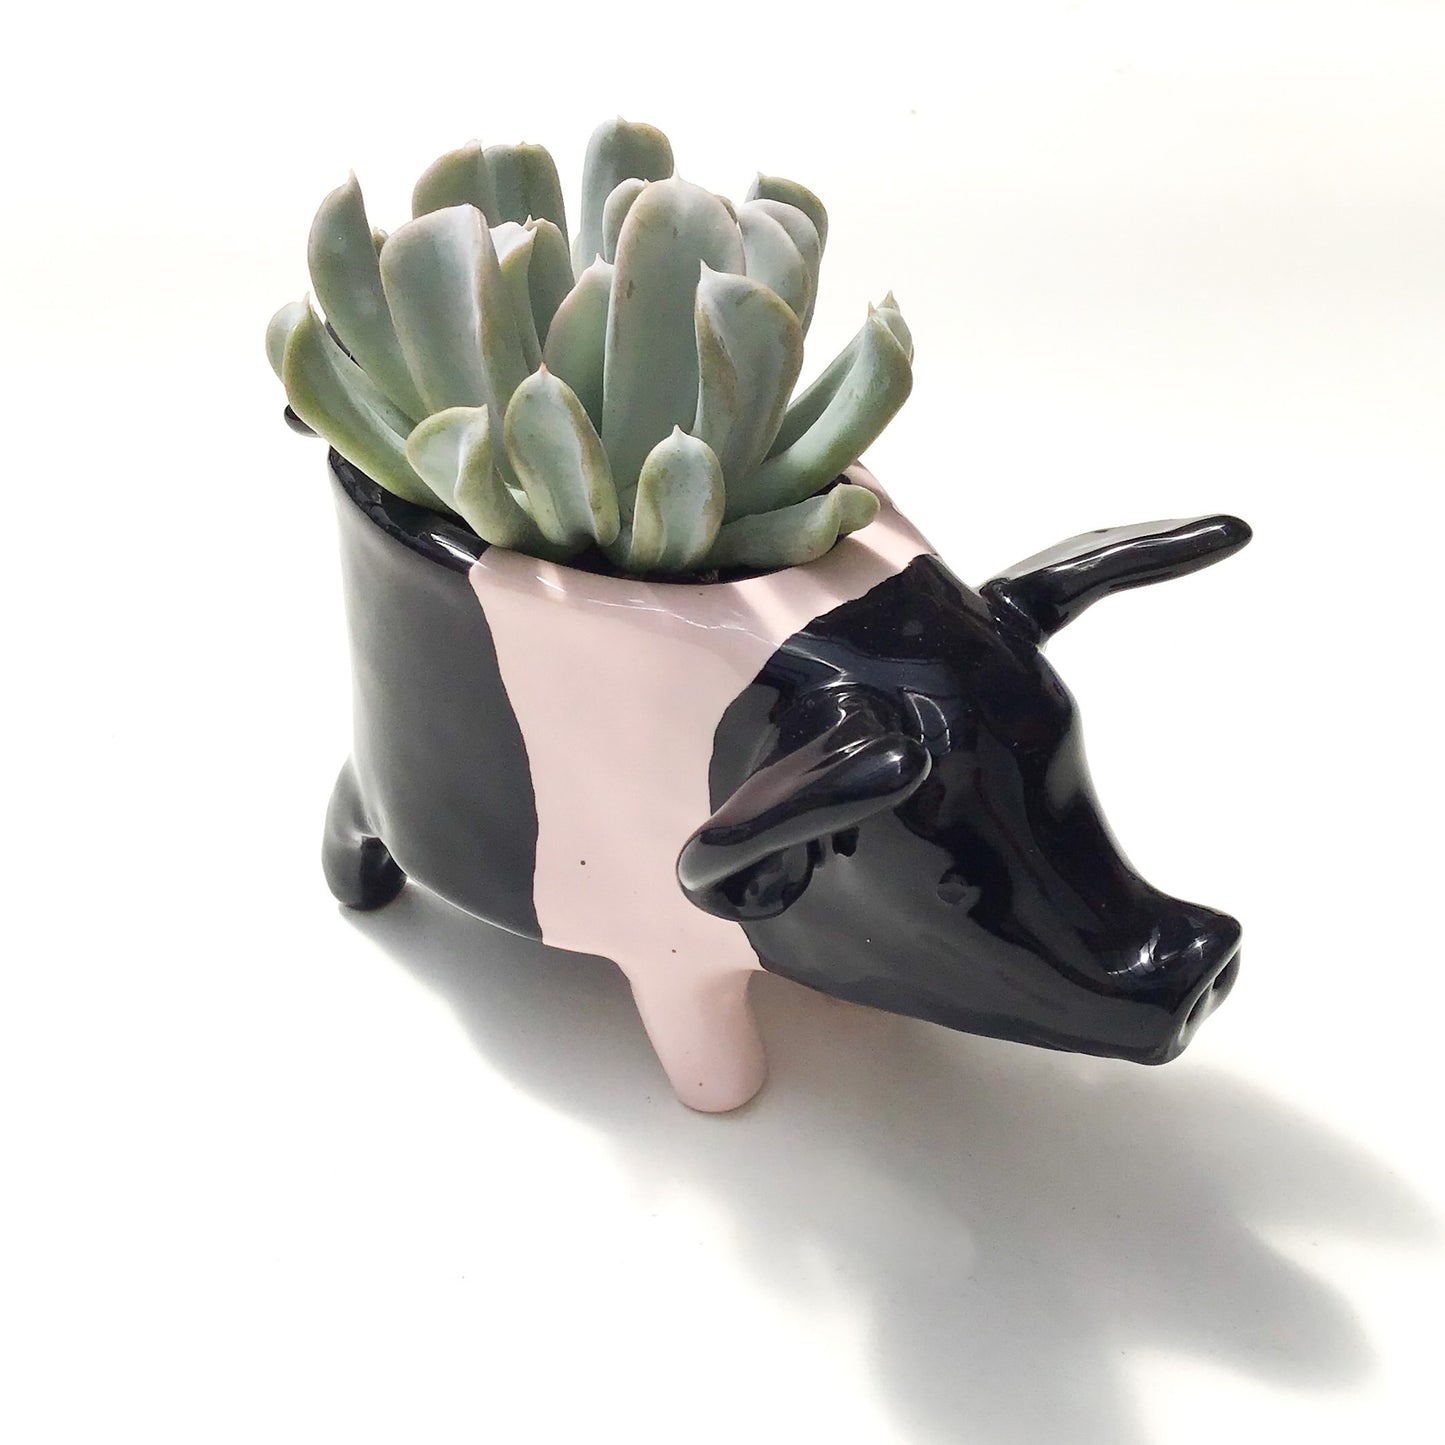 Hampshire Pig Pot - Ceramic Pig Planter